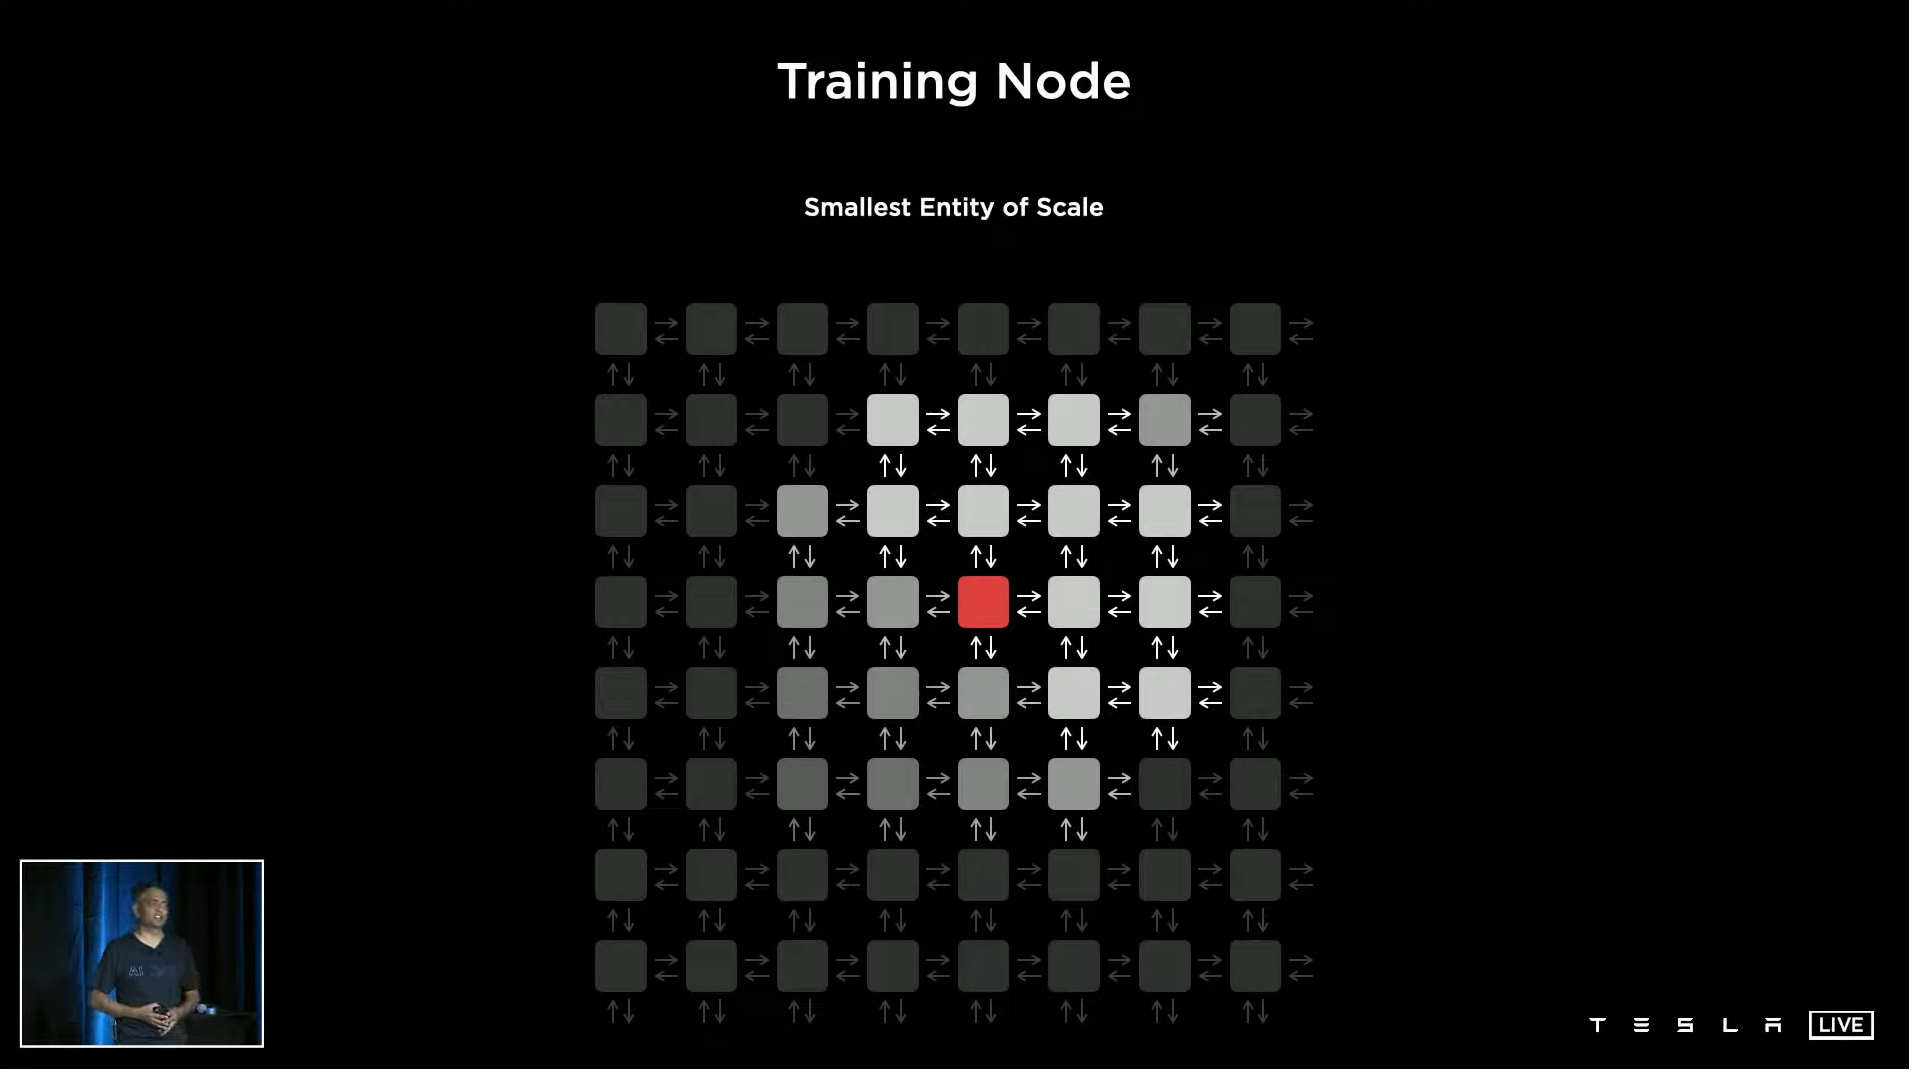 그물망 형태의 2D 메쉬 구조로 배열된 트레이닝 노드의 모습 (사진 출처: 테슬라)